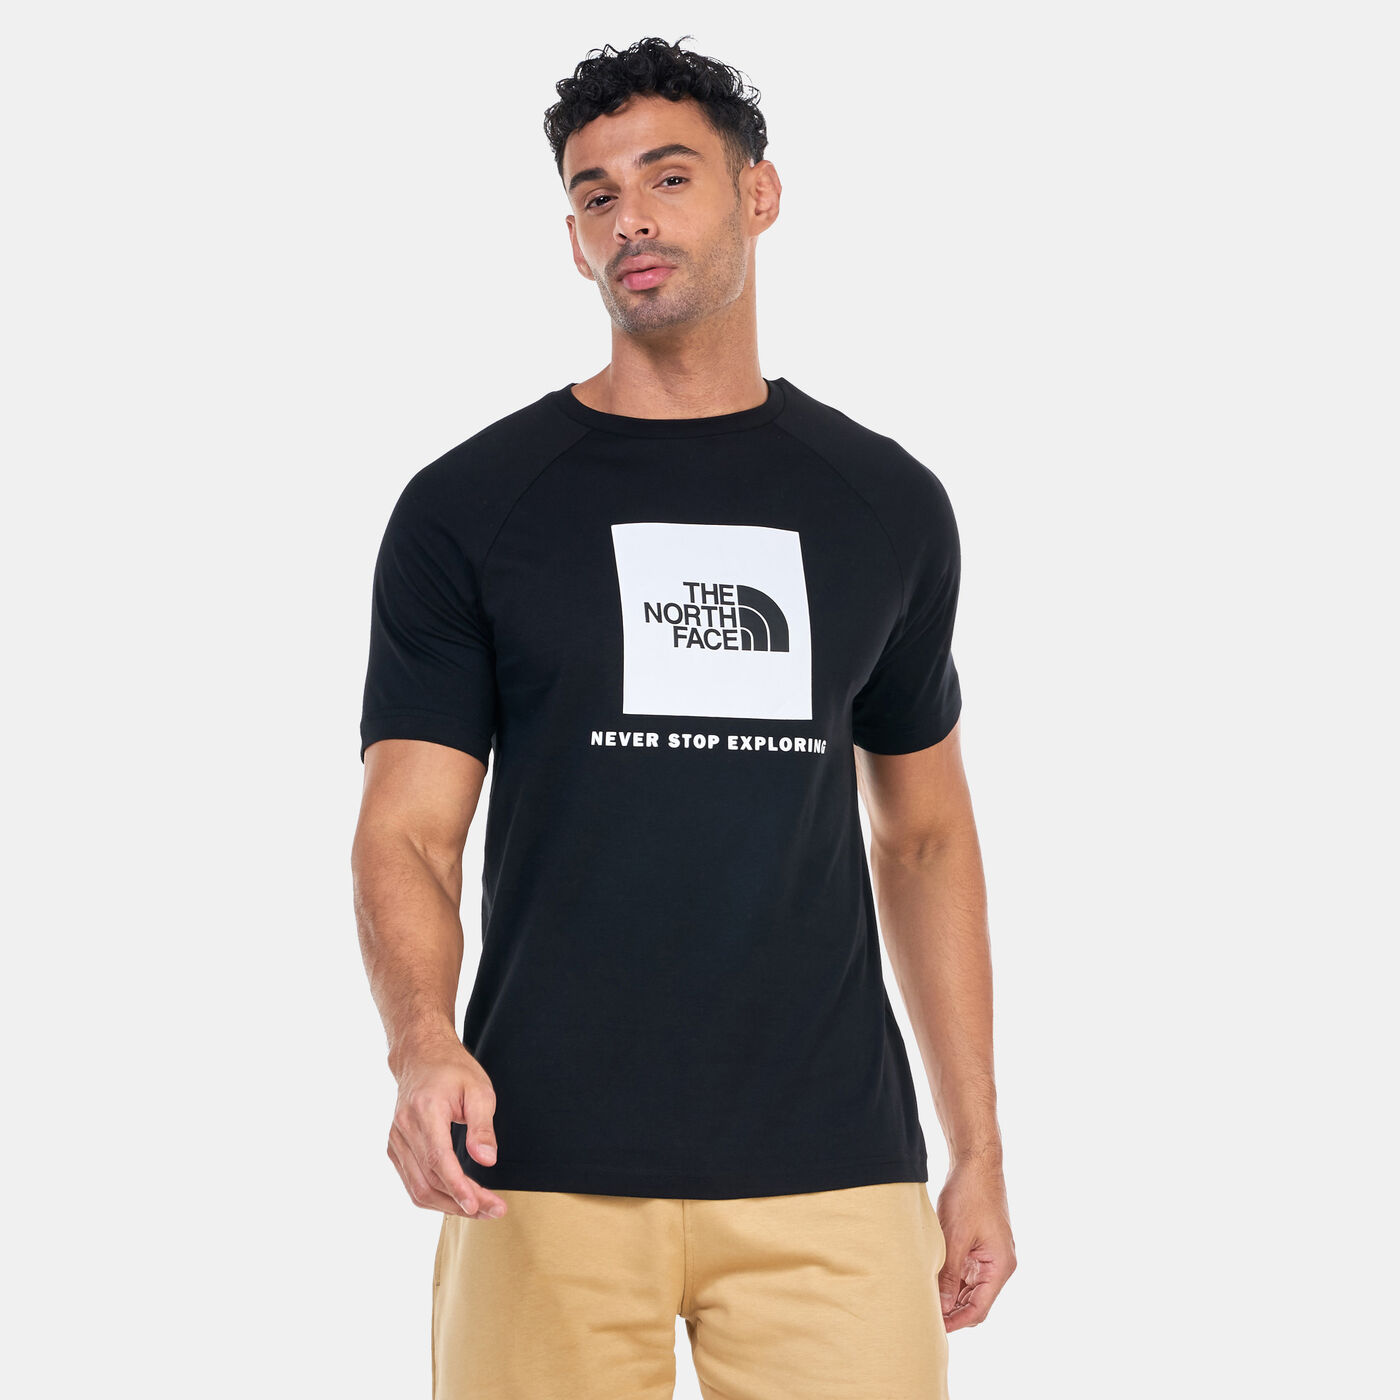 Men's Redbox T-Shirt